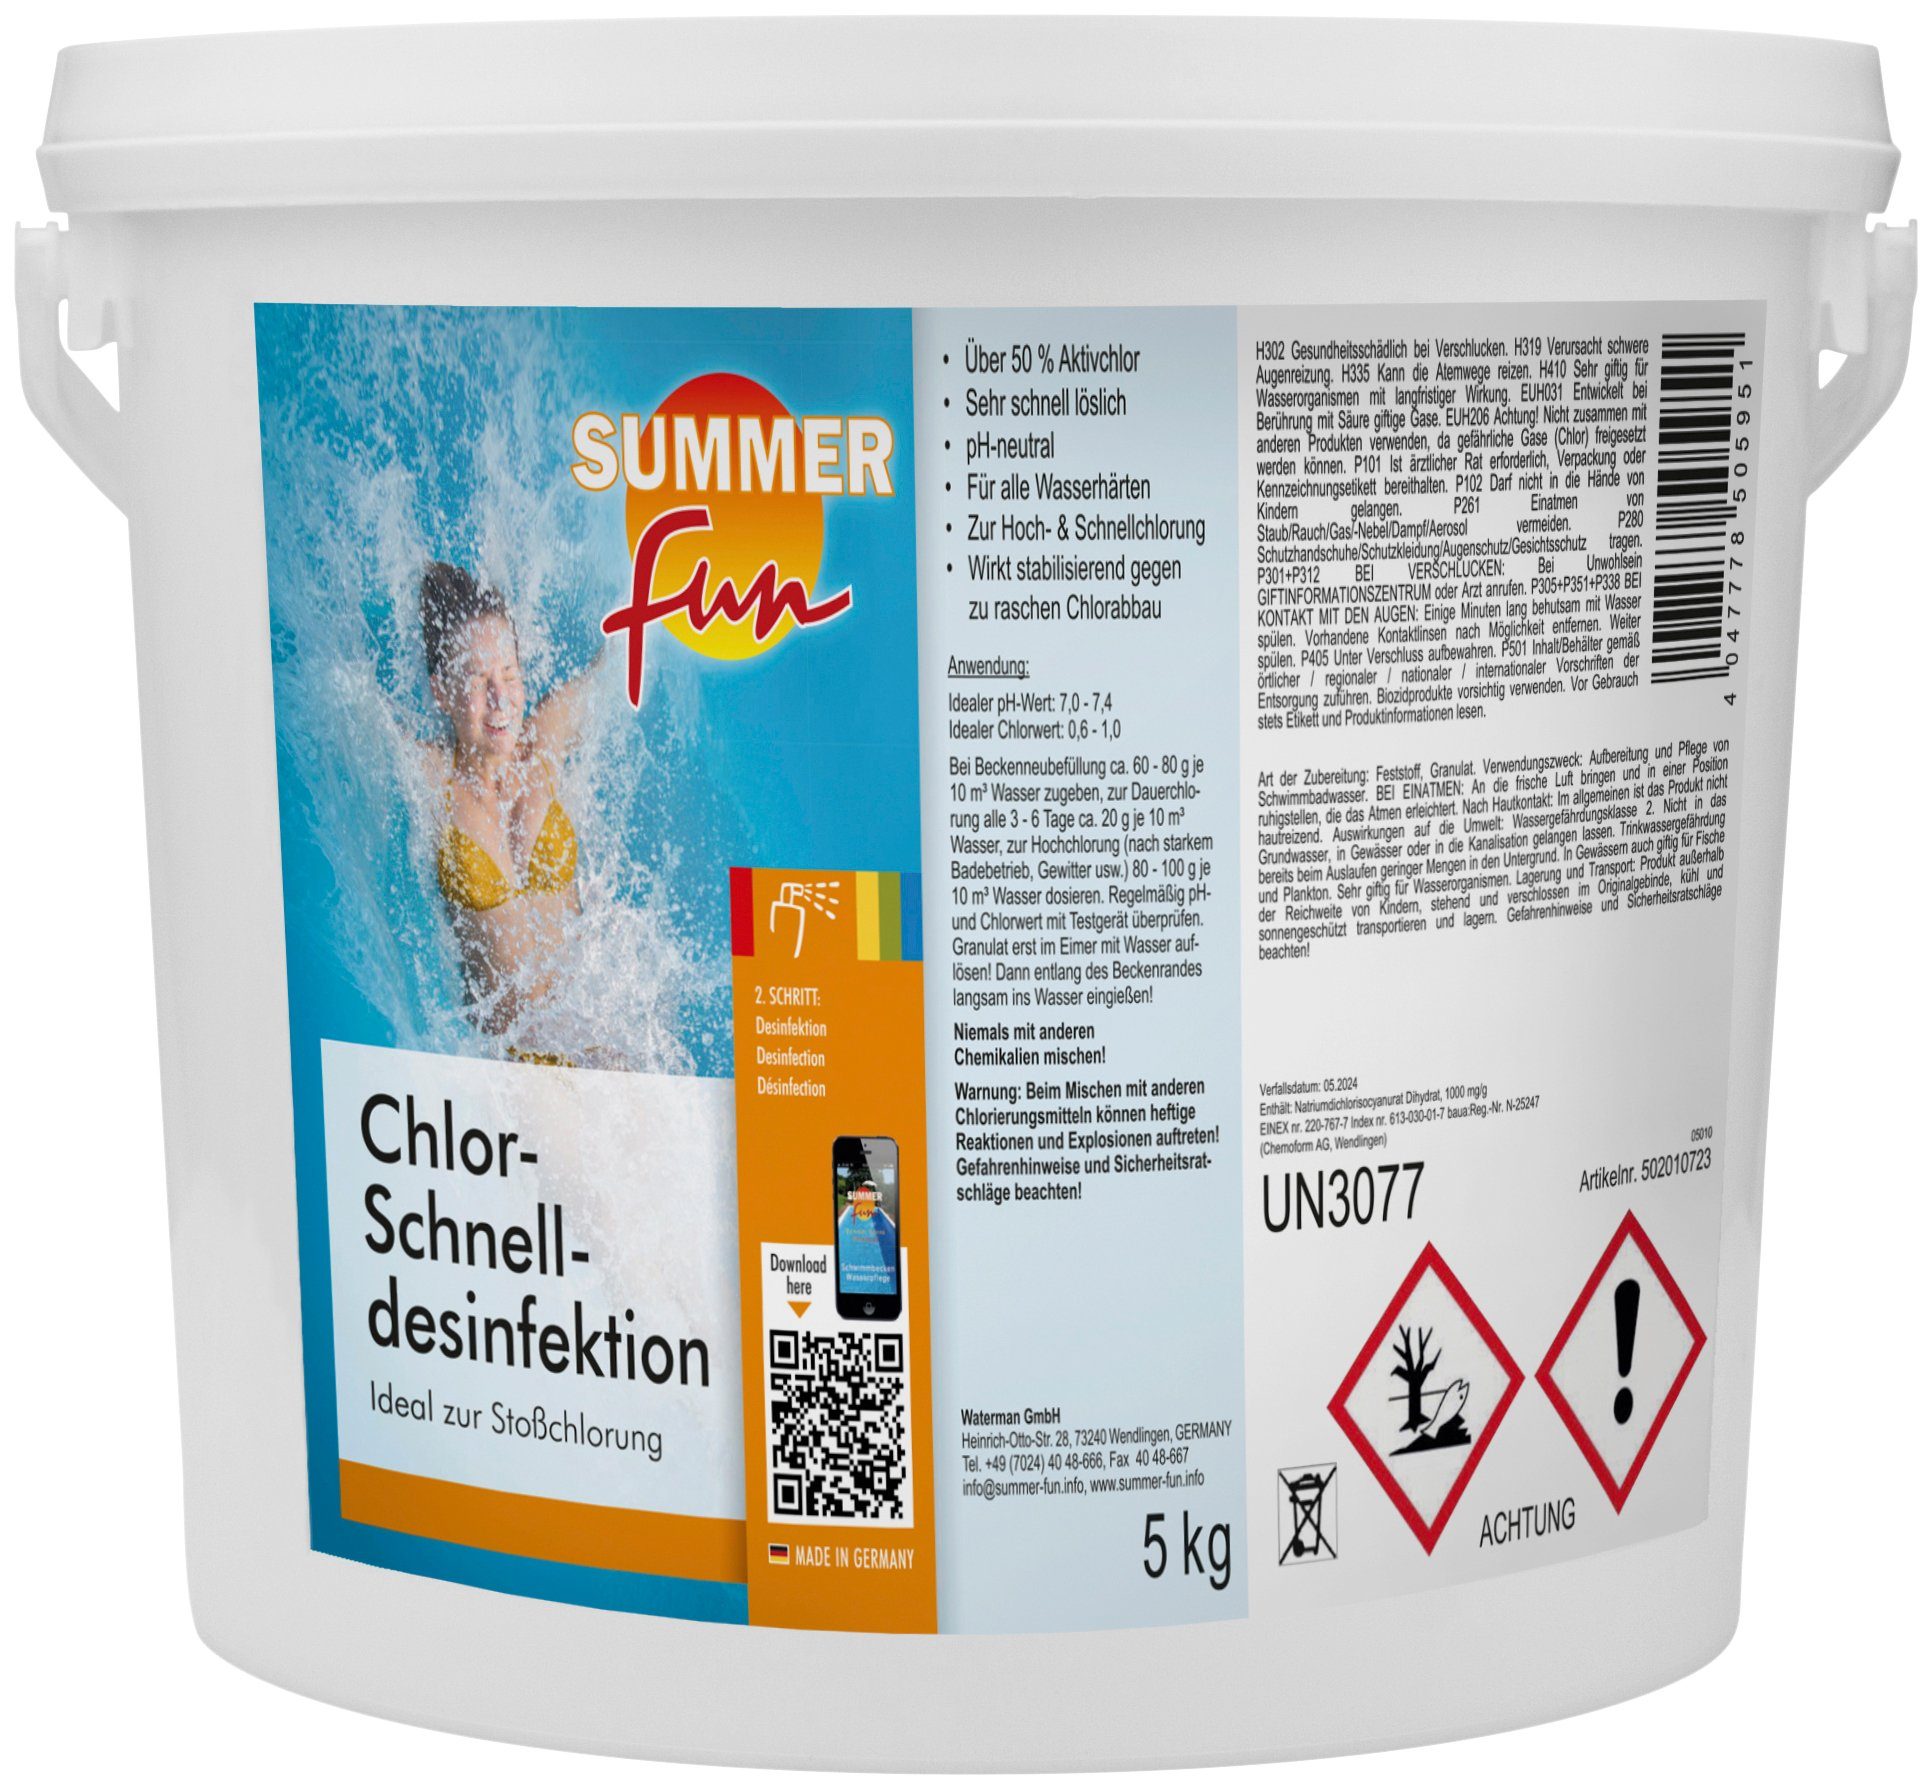 SUMMER FUN Chlorgranulat Chlor-Schnelldesinfektion, 5 kg Granulat